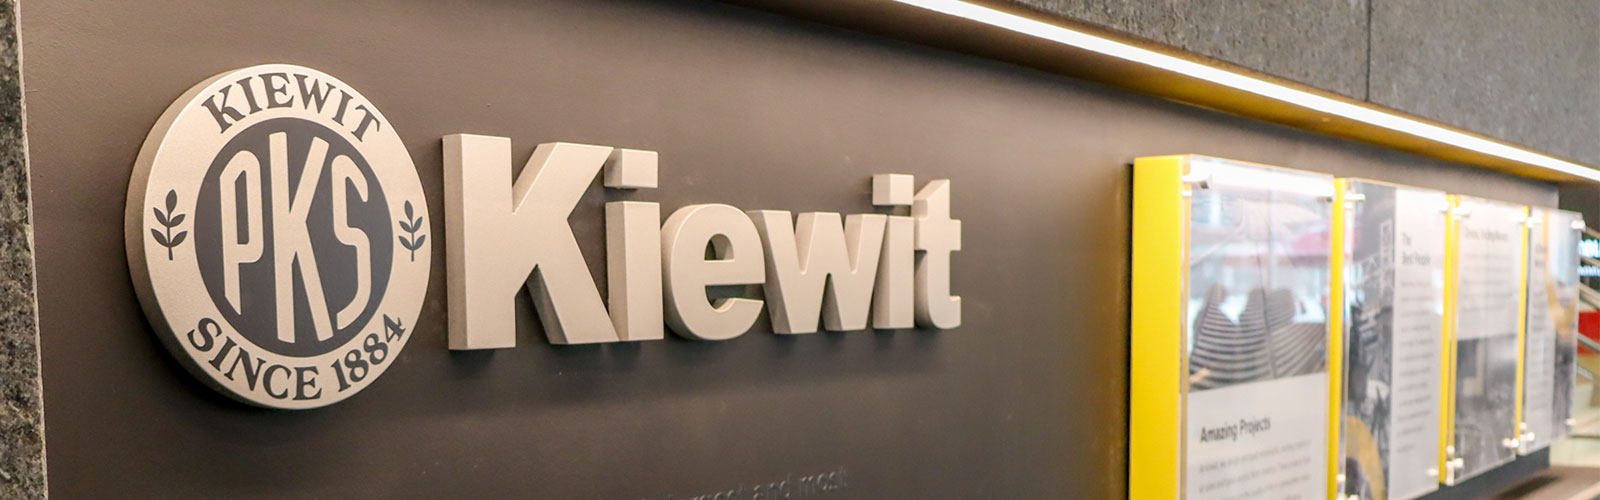 Kiewit display wall inside Kiewit Hall on the University of Nebraska-Lincoln campus.